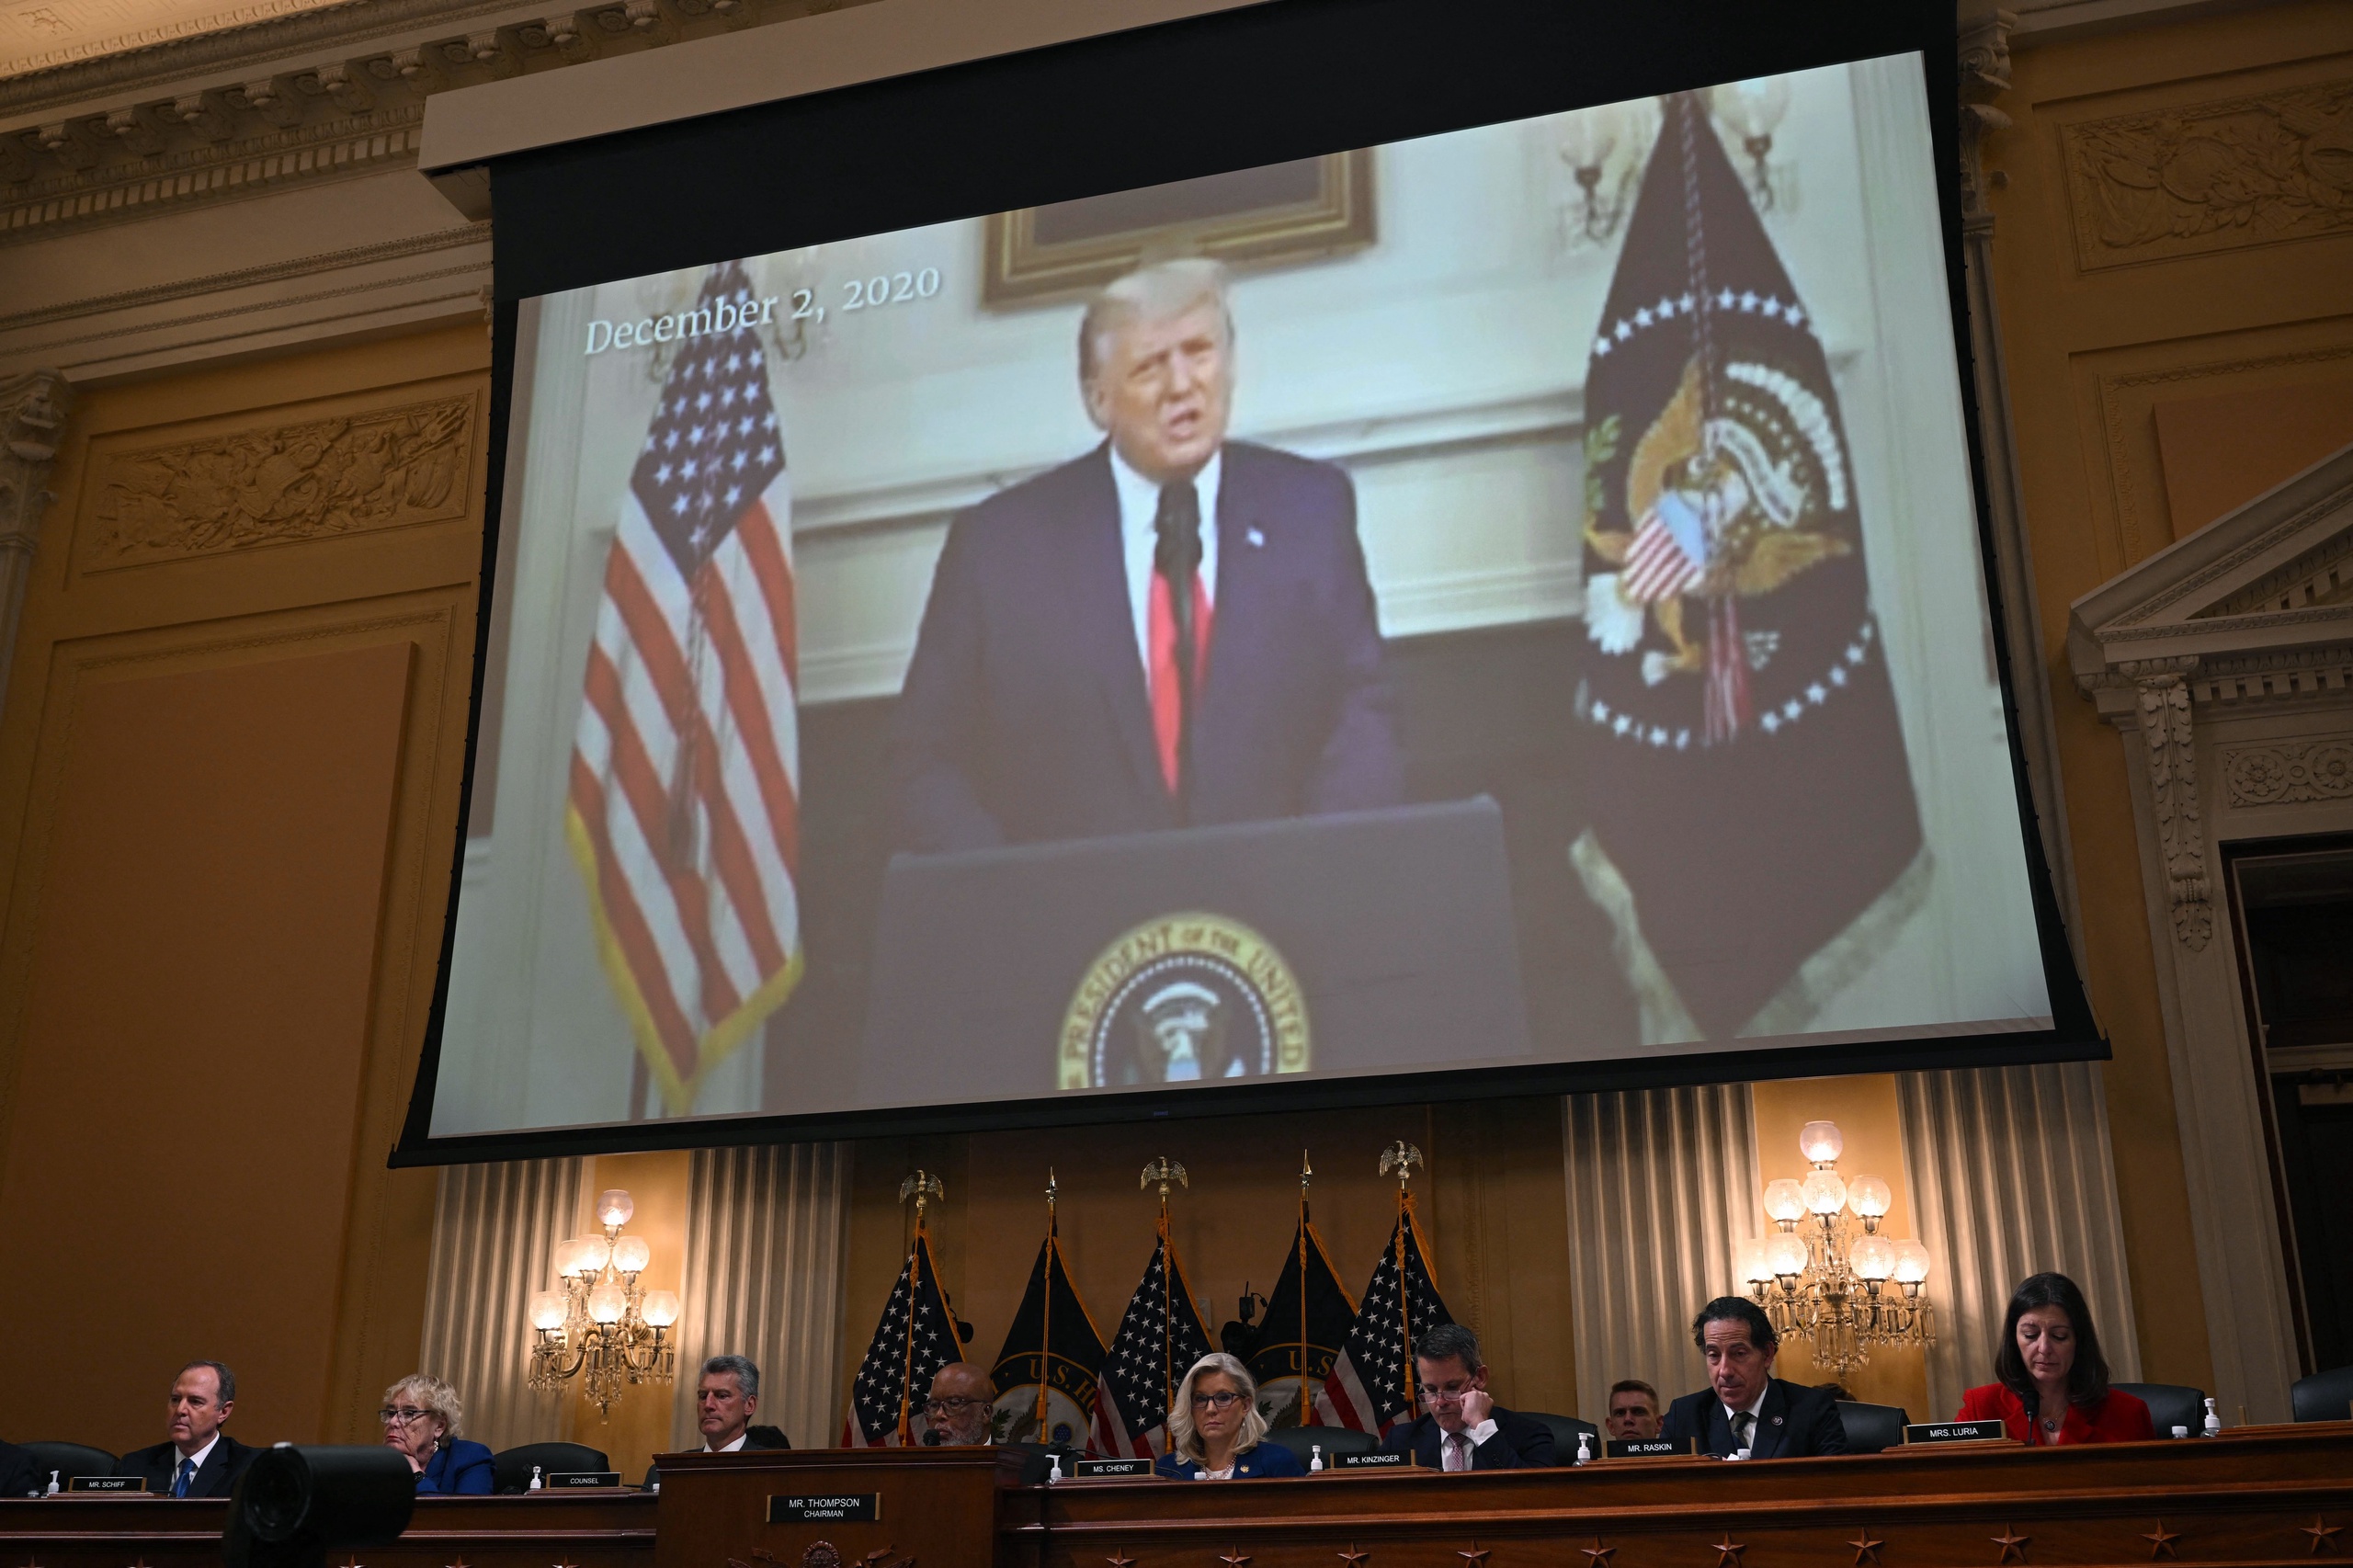 De commissie van het Amerikaanse Huis van Afgevaardigden die de aanval op het Capitool van 6 januari onderzoekt, heeft donderdag unaniem gestemd om een dagvaarding uit te vaardigen voor voormalig president Donald Trump.